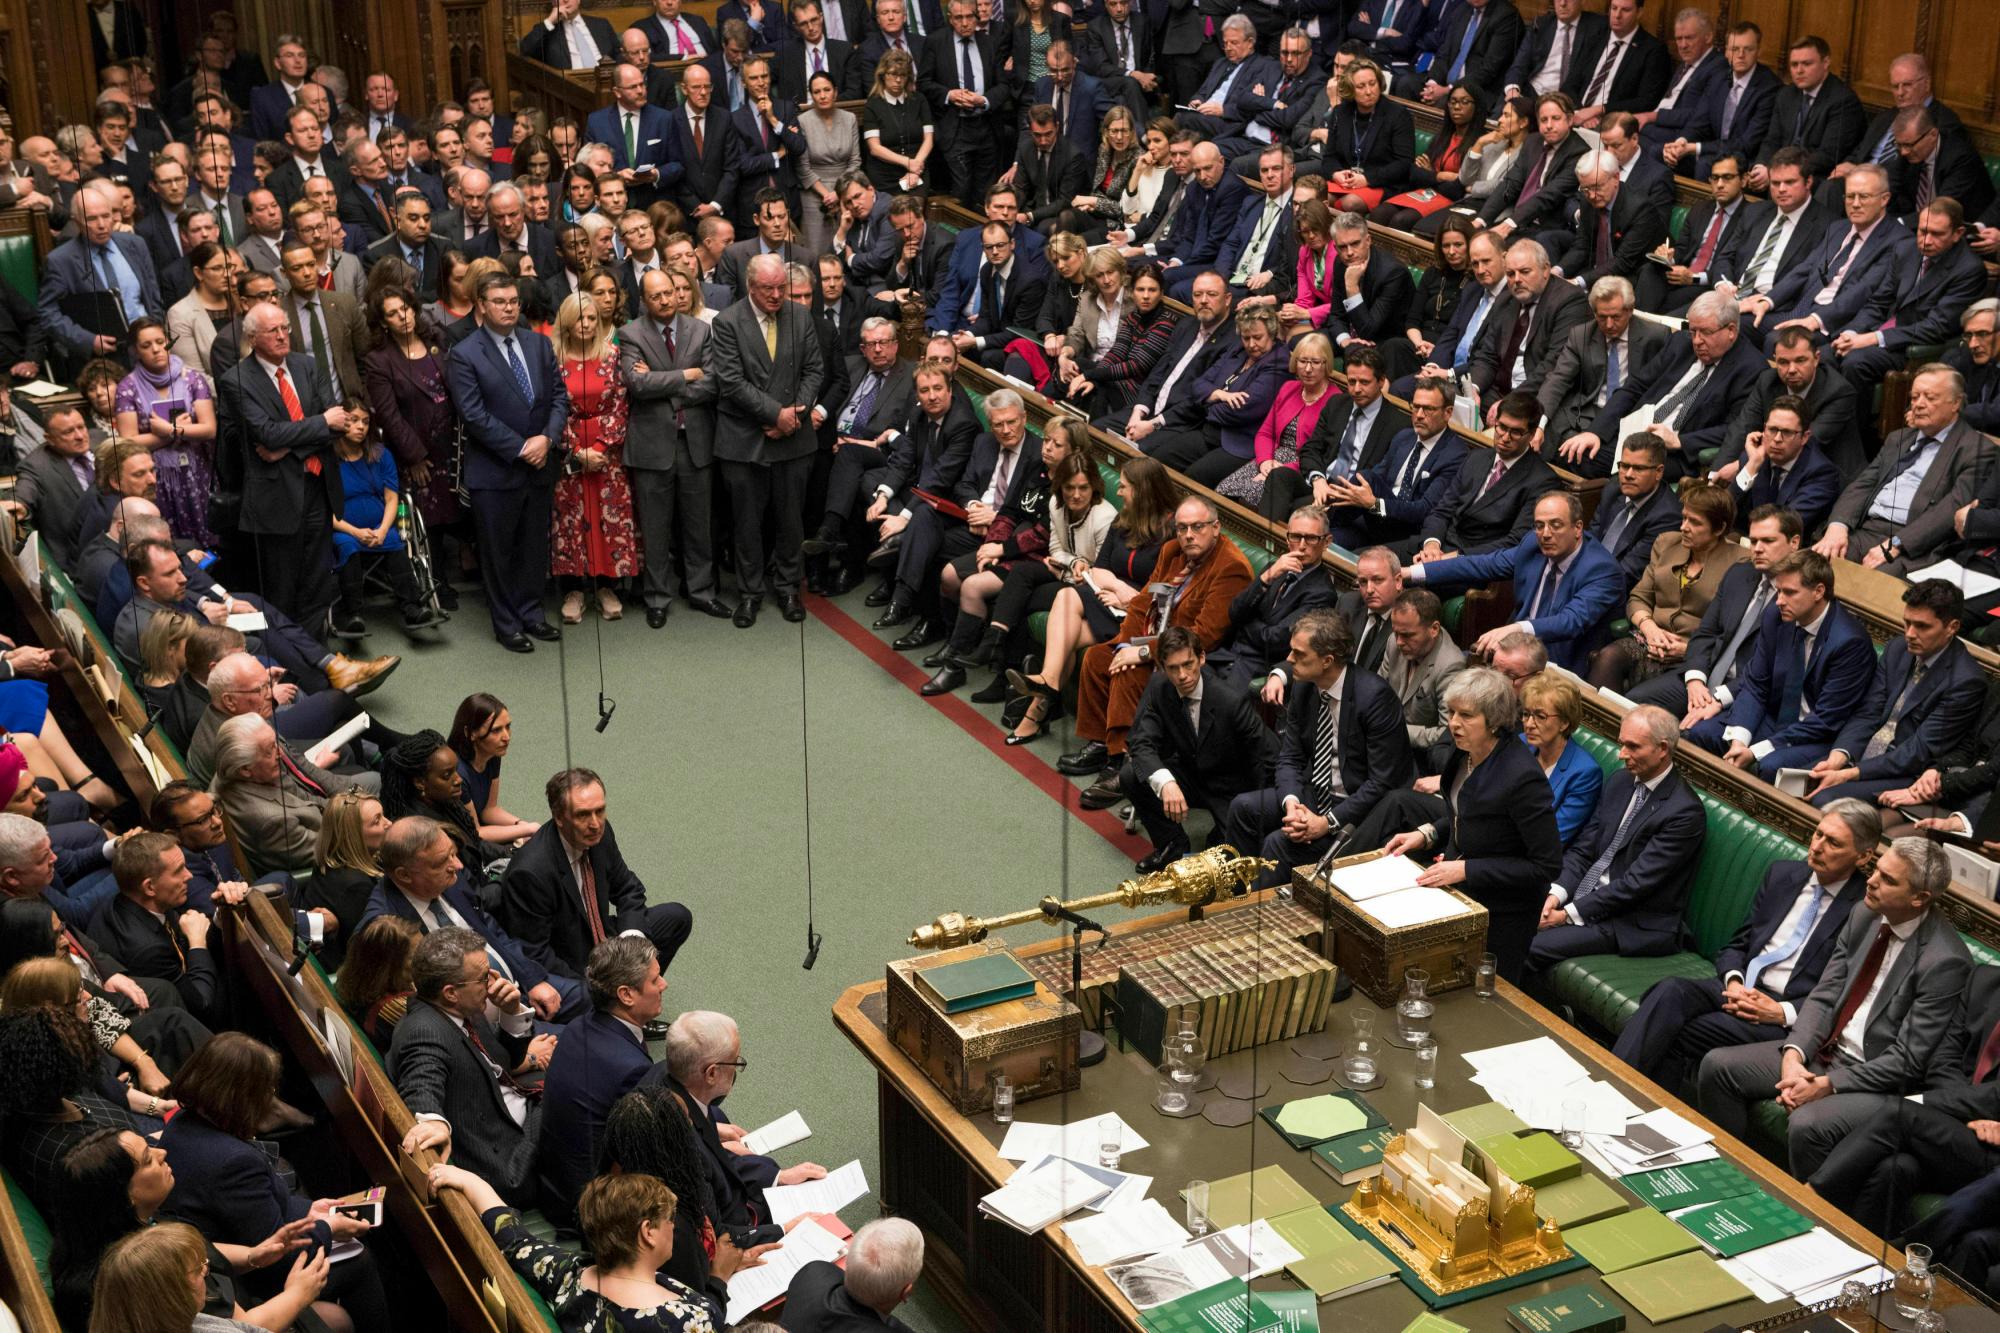 En esta imagen emitida por la Cámara de los Comunes del Trabajo, el líder Jeremy Corbyn habla en la Cámara de los Comunes en Londres después de que el Primer Ministro británico Theresa May perdió una votación sobre su plan Brexit el 15 de enero de 2019. Los legisladores británicos rechazaron el Brexit del Primer Ministro Theresa May Trato por un gran margen, sumiendo a la política del Reino Unido en una crisis 10 semanas antes de que el país salga de la Unión Europea. La Cámara de los Comunes votó 432 -202 el martes en contra del acuerdo alcanzado entre el gobierno británico y la UE en noviembre